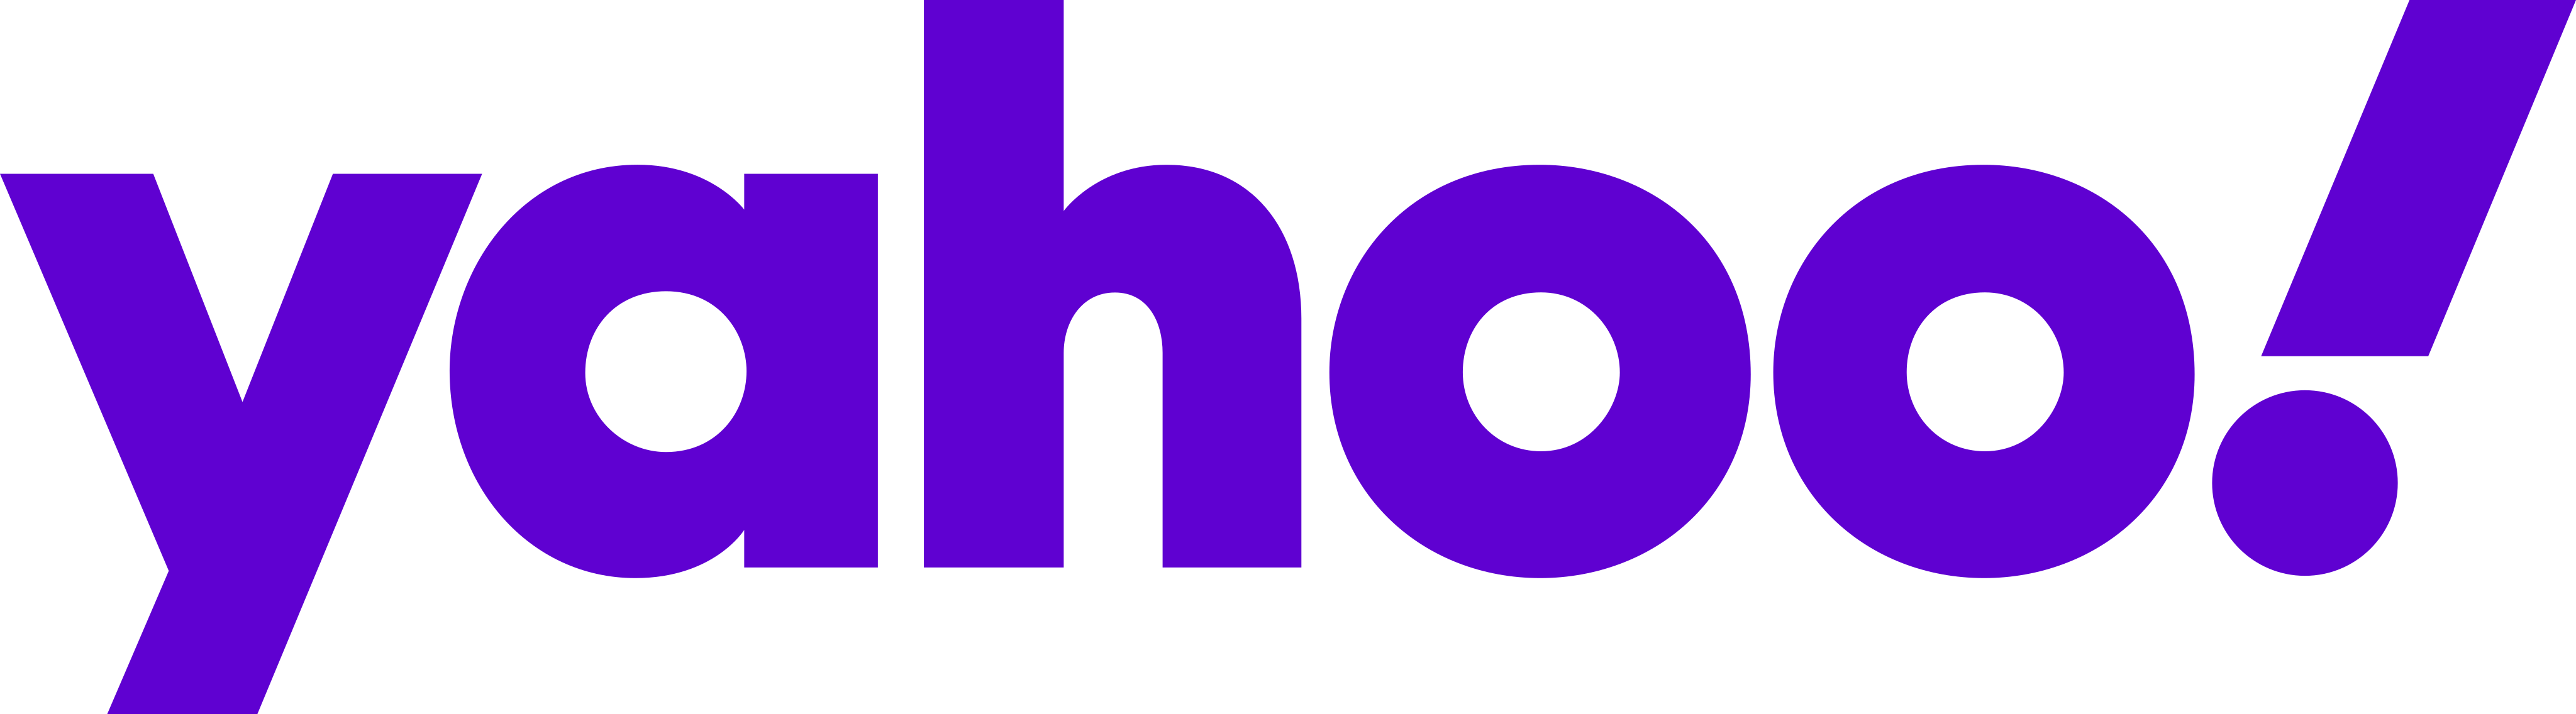 yahoo logo png free download 3